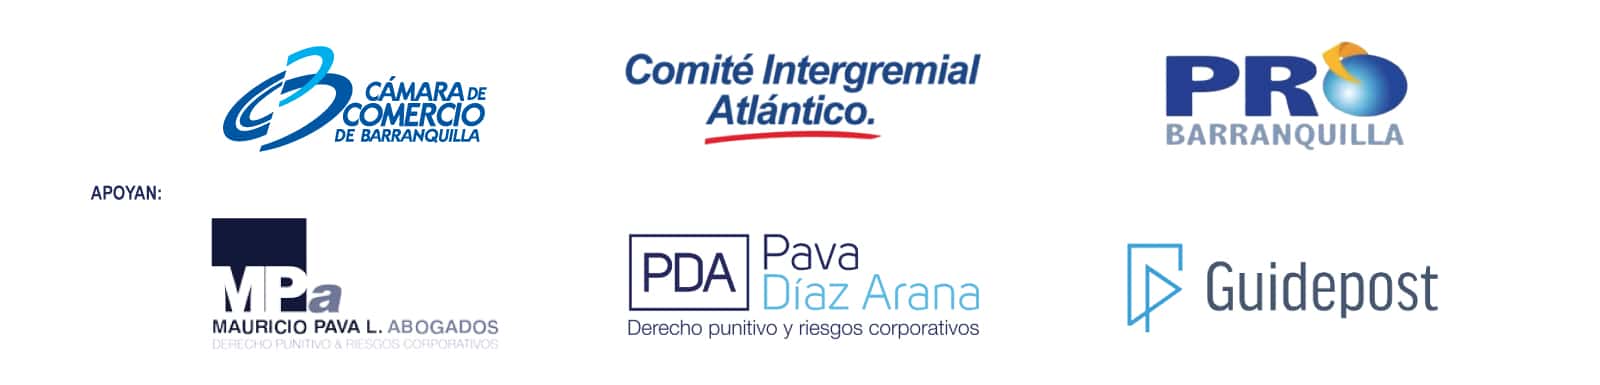 Logo comite intergremial del atlántico